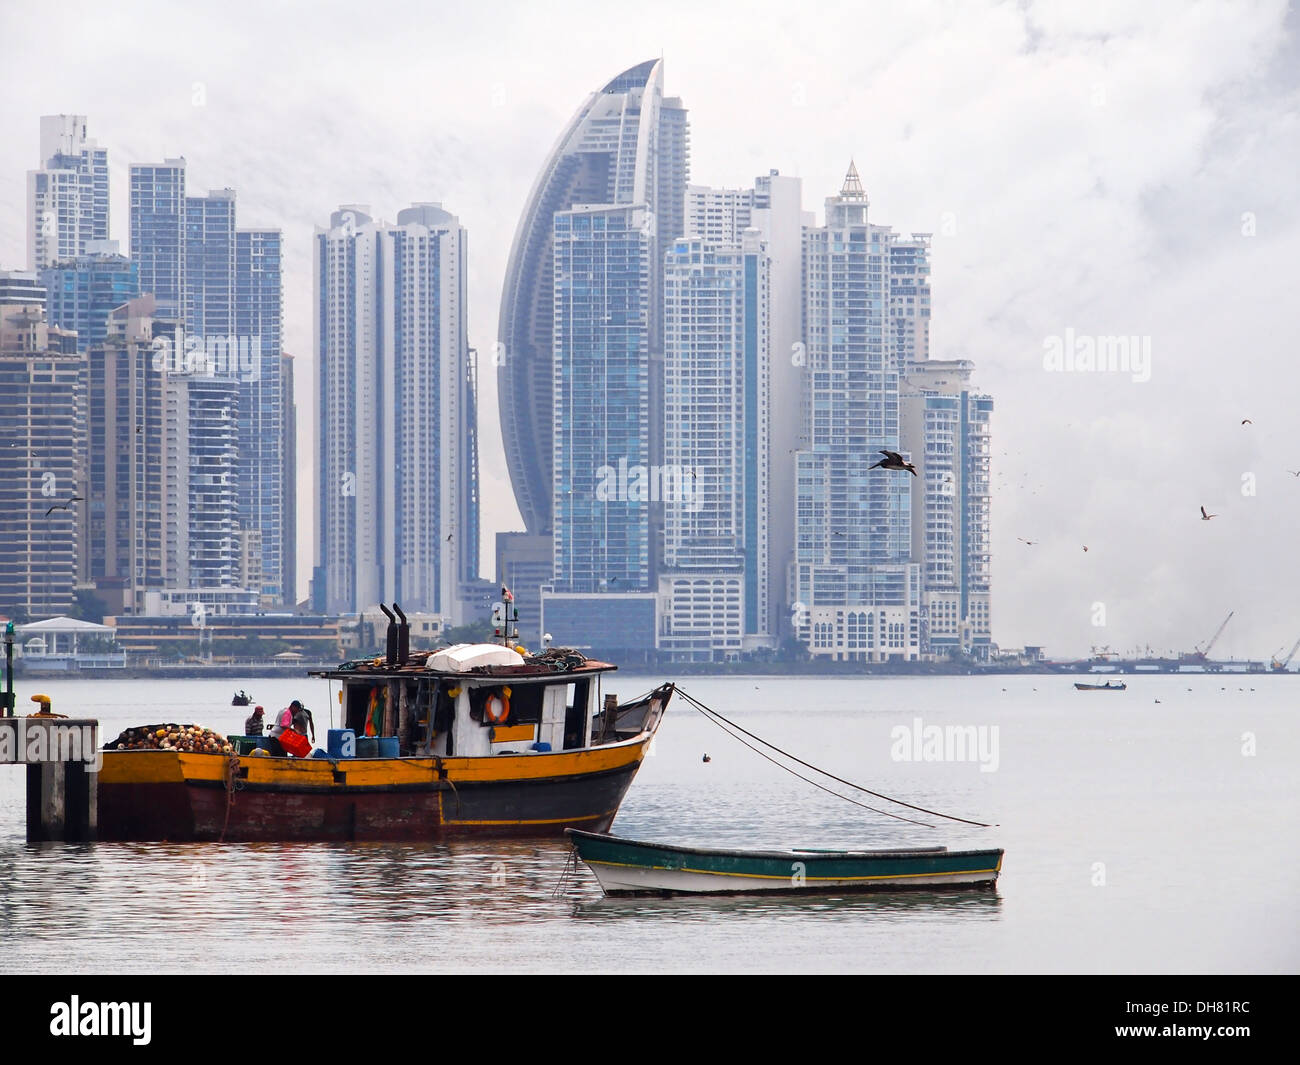 Vecchia barca da pesca in primo piano con grattacieli in background, Città di Panama , Panama America Centrale Foto Stock